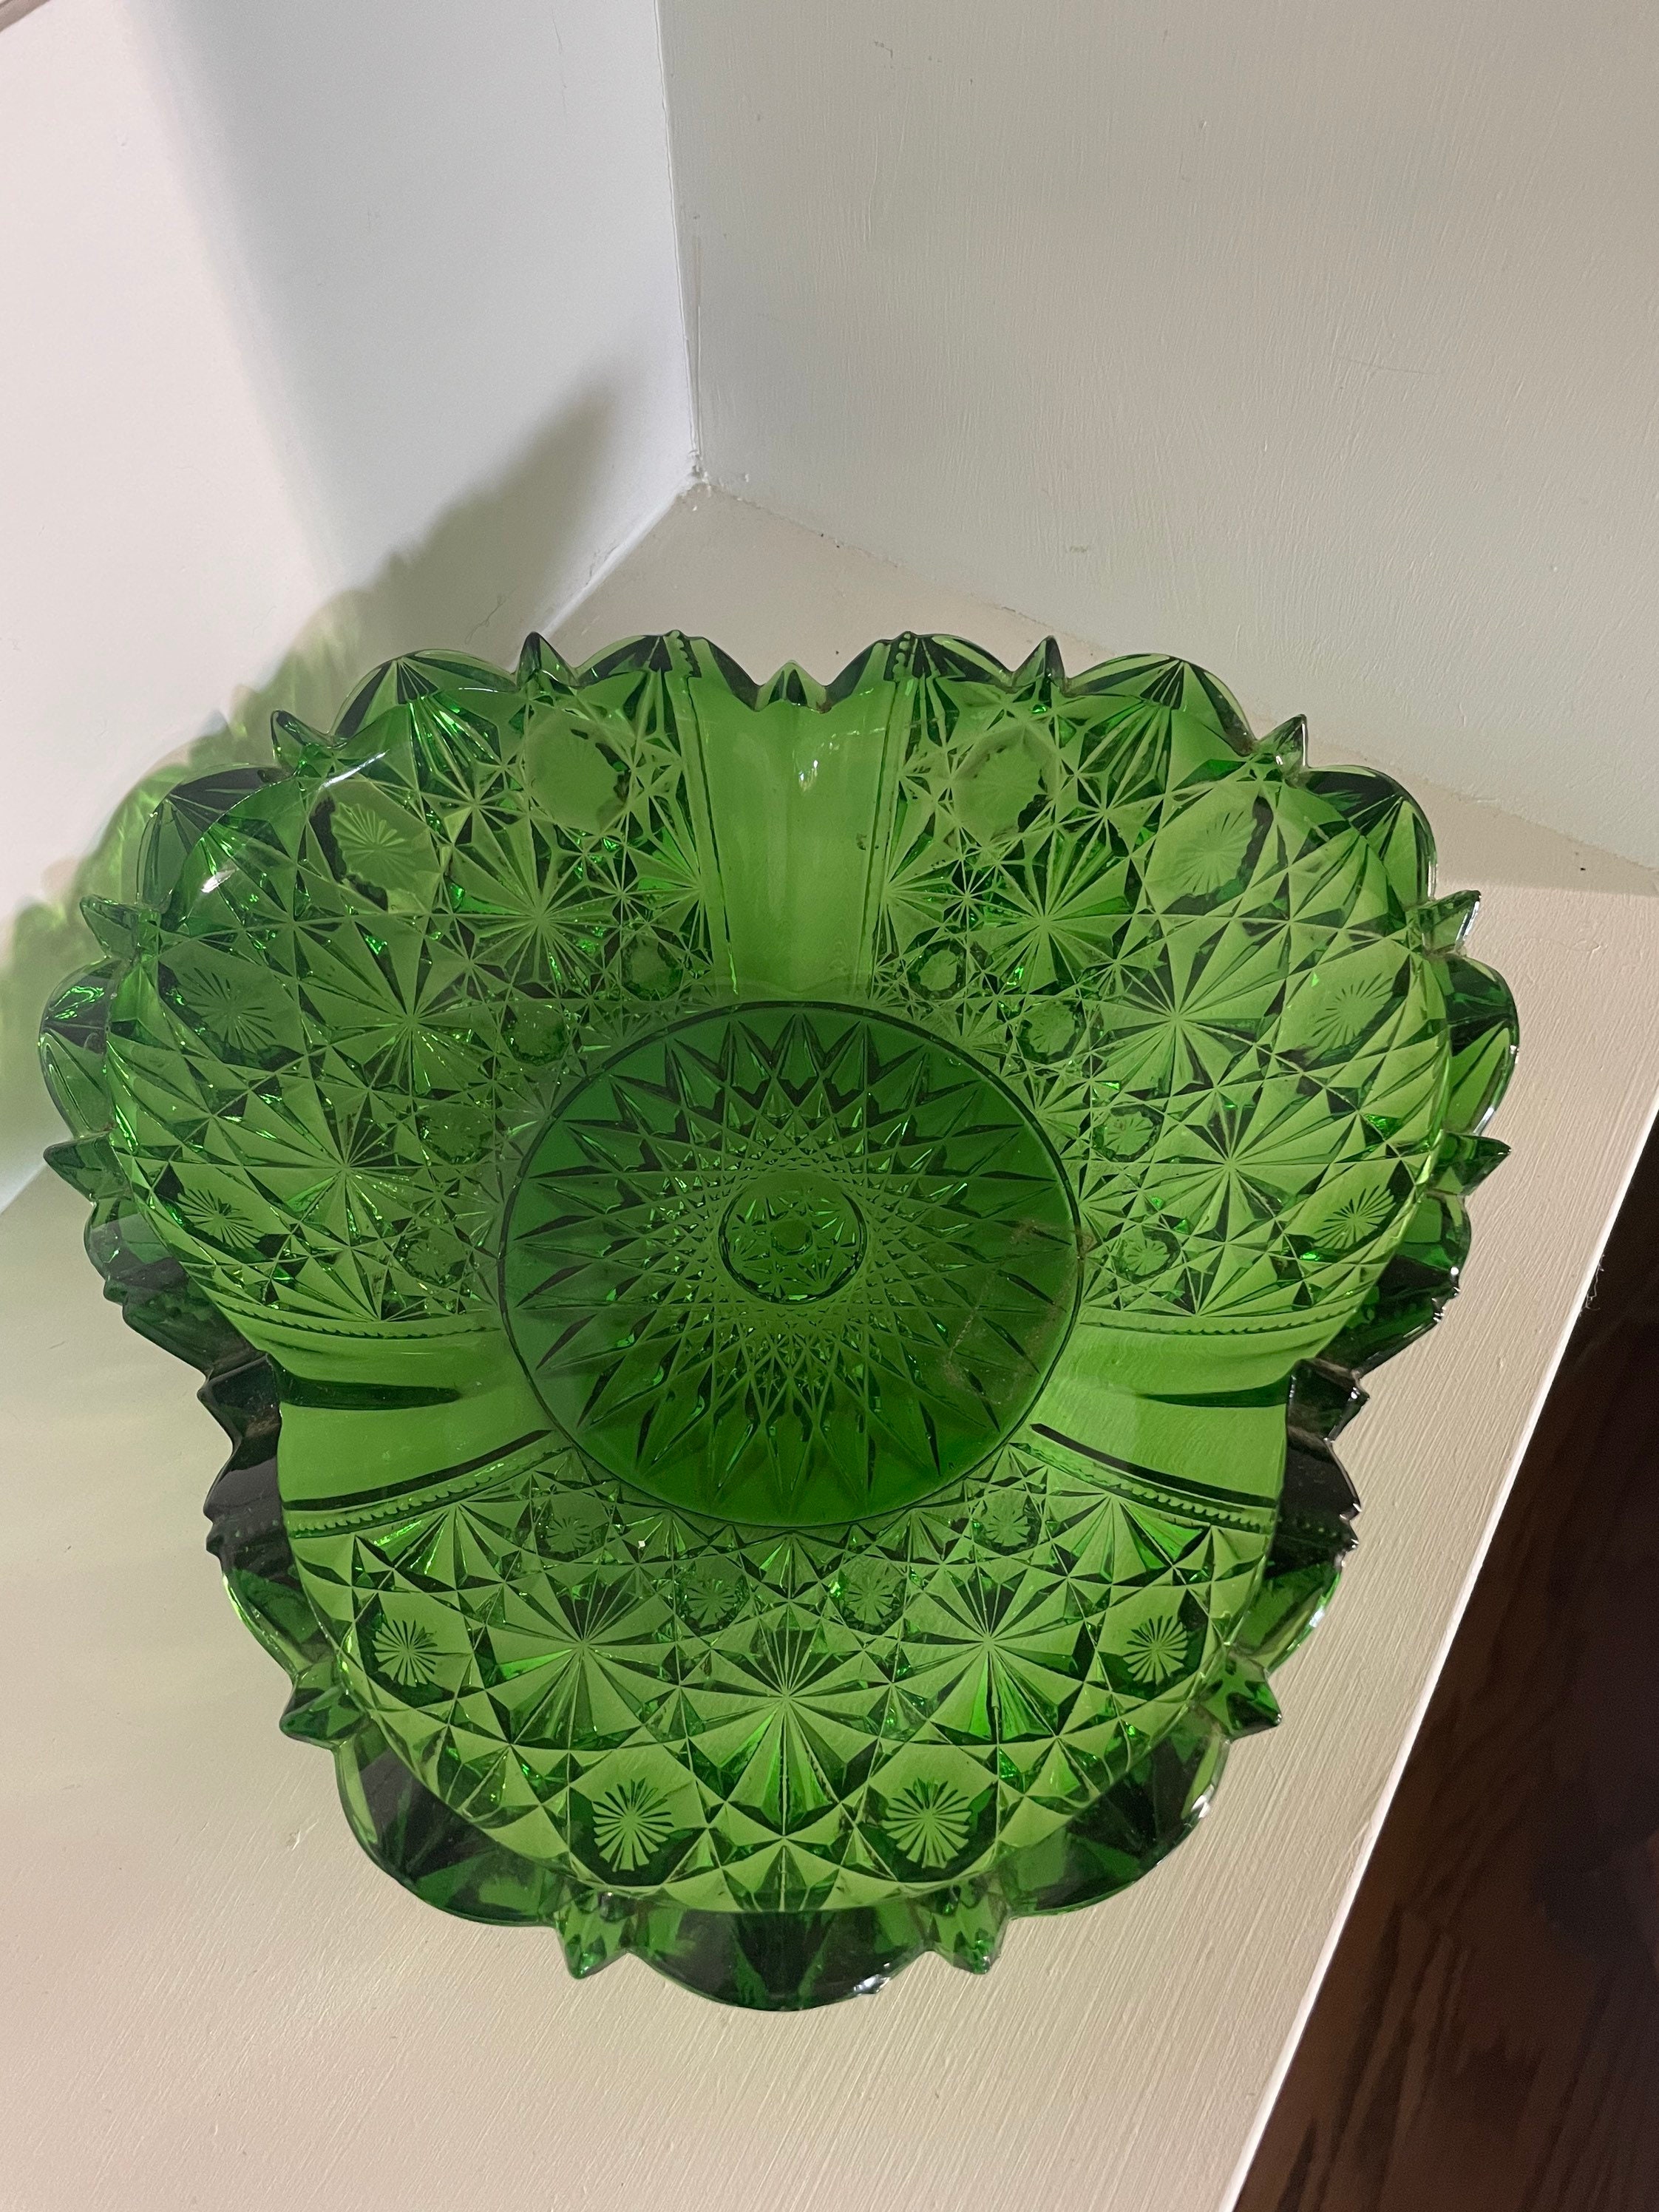 Vintage Emerald Green Lead Crystal Serving Bowl - Etsy UK